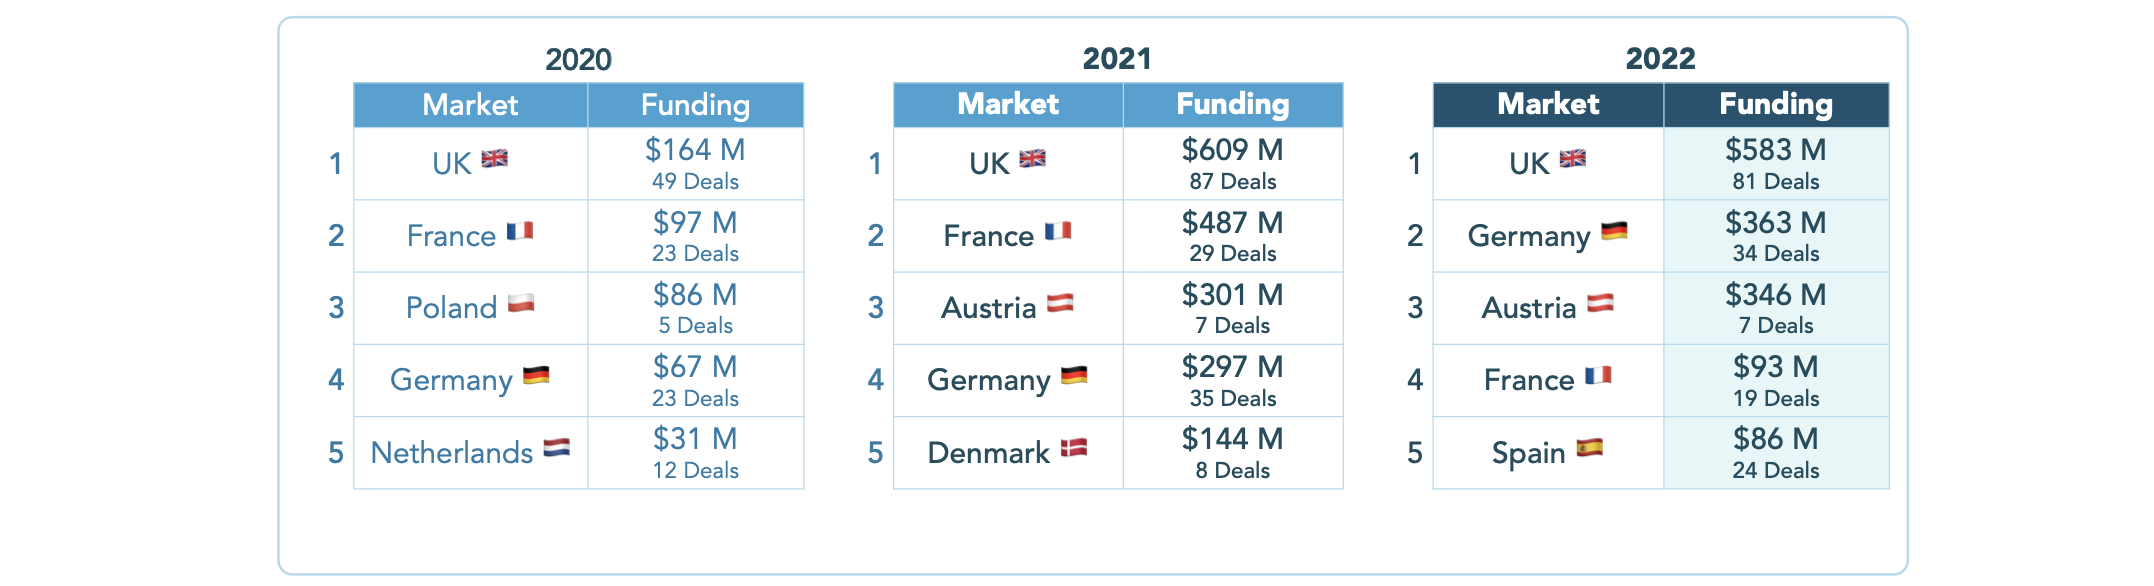 Financement Edtech en Europe par marché.  Crédits image: Brighteye Ventures